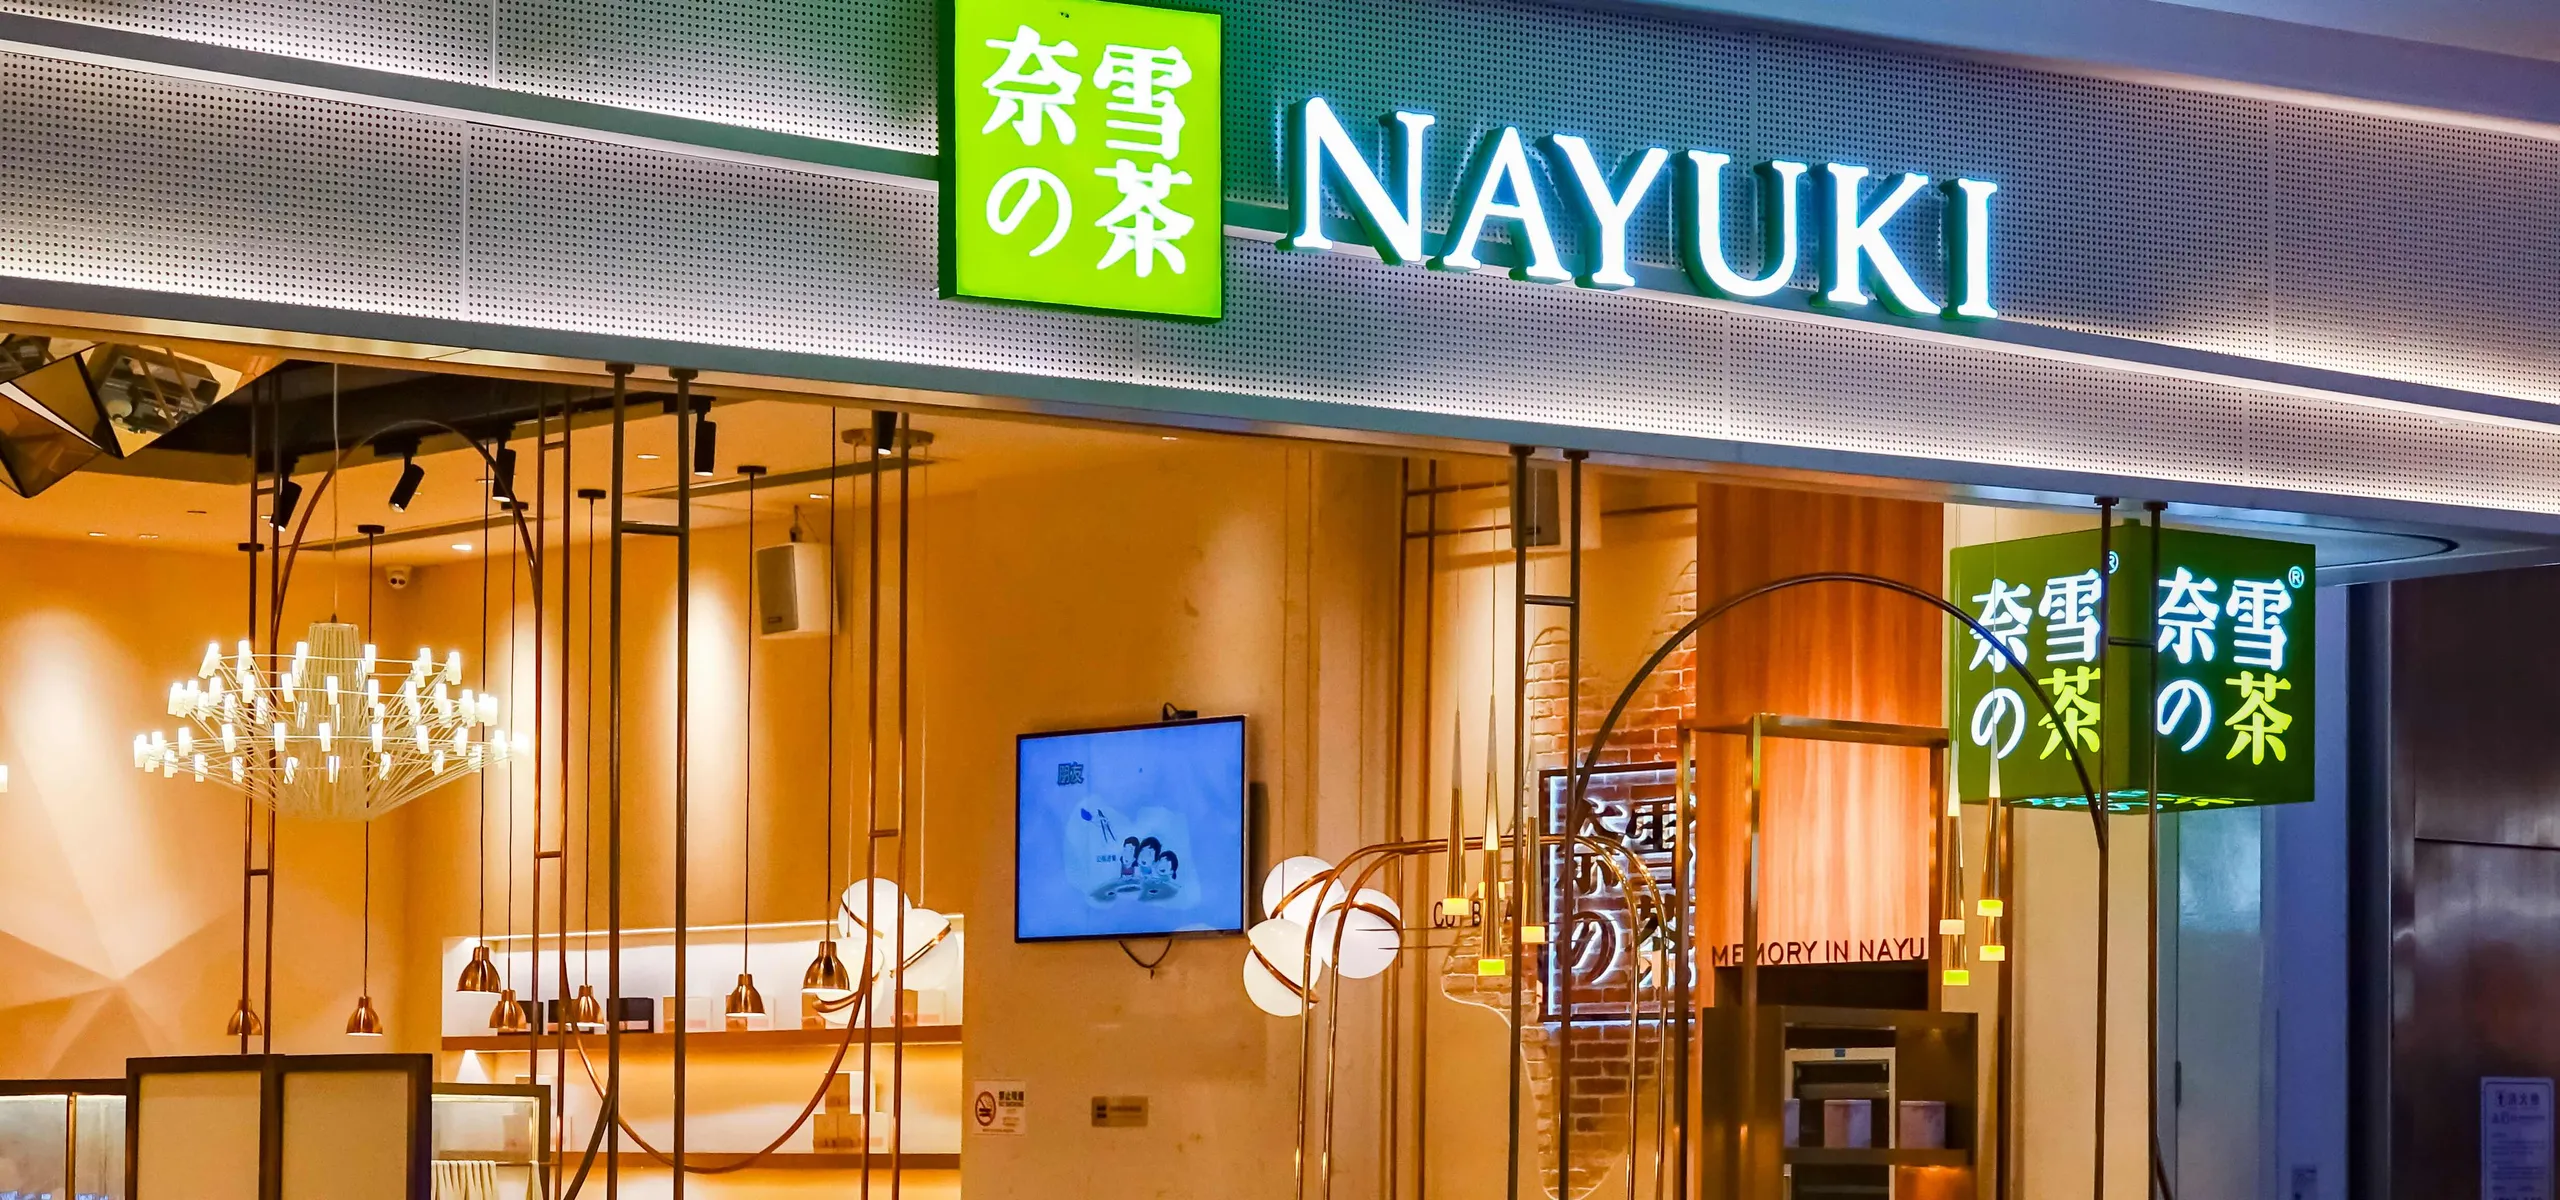 Nayuki sign